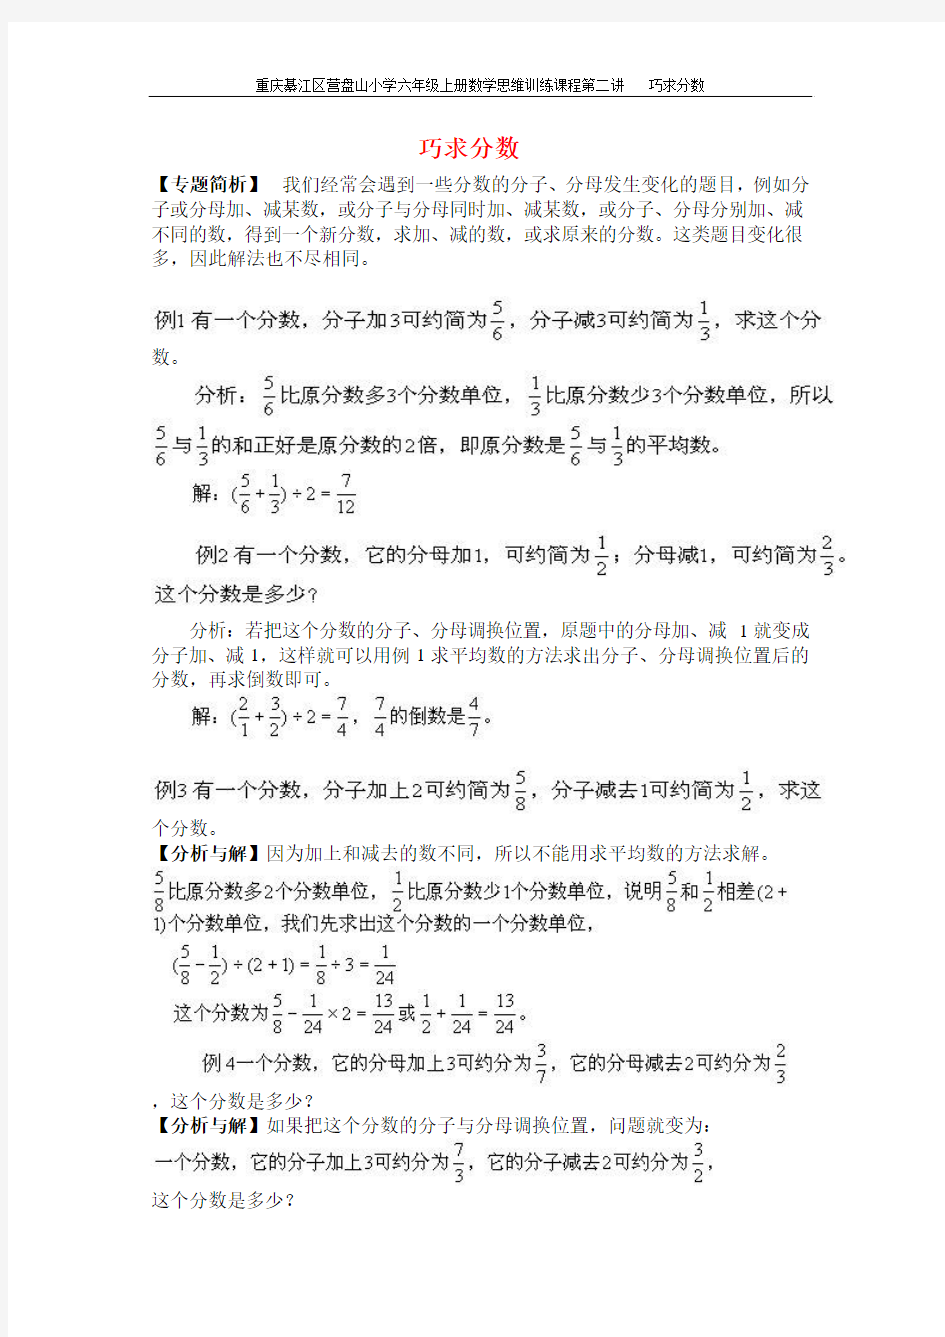 重庆綦江区营盘山小学六年级上册数学思维训练课程第二讲巧求分数